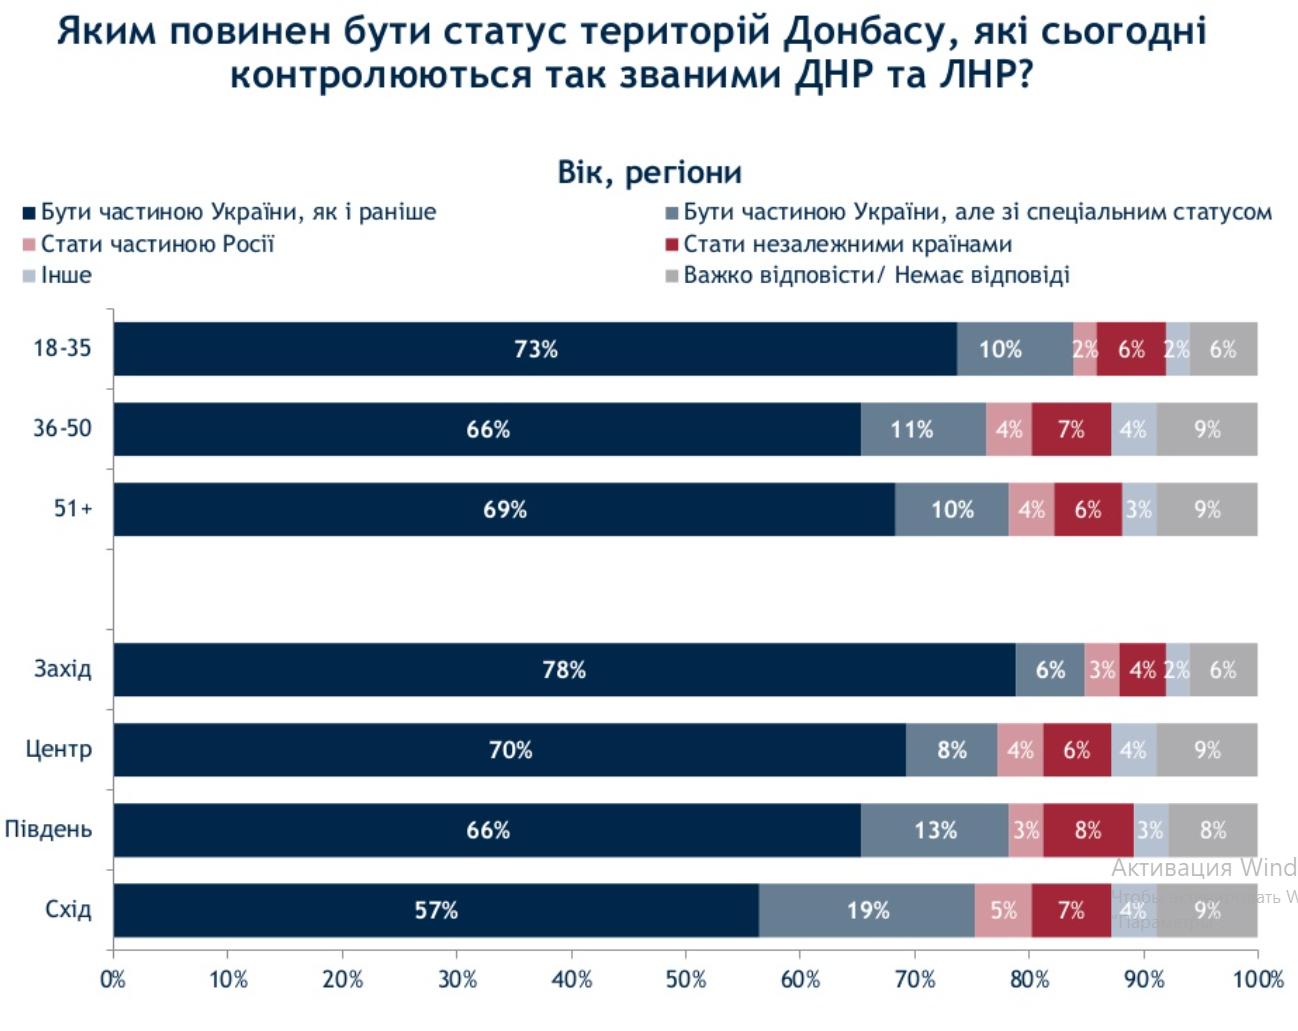 Украинцев спросили о судьбе оккупированного Донбасса. За спецстатус лишь 10% – опрос